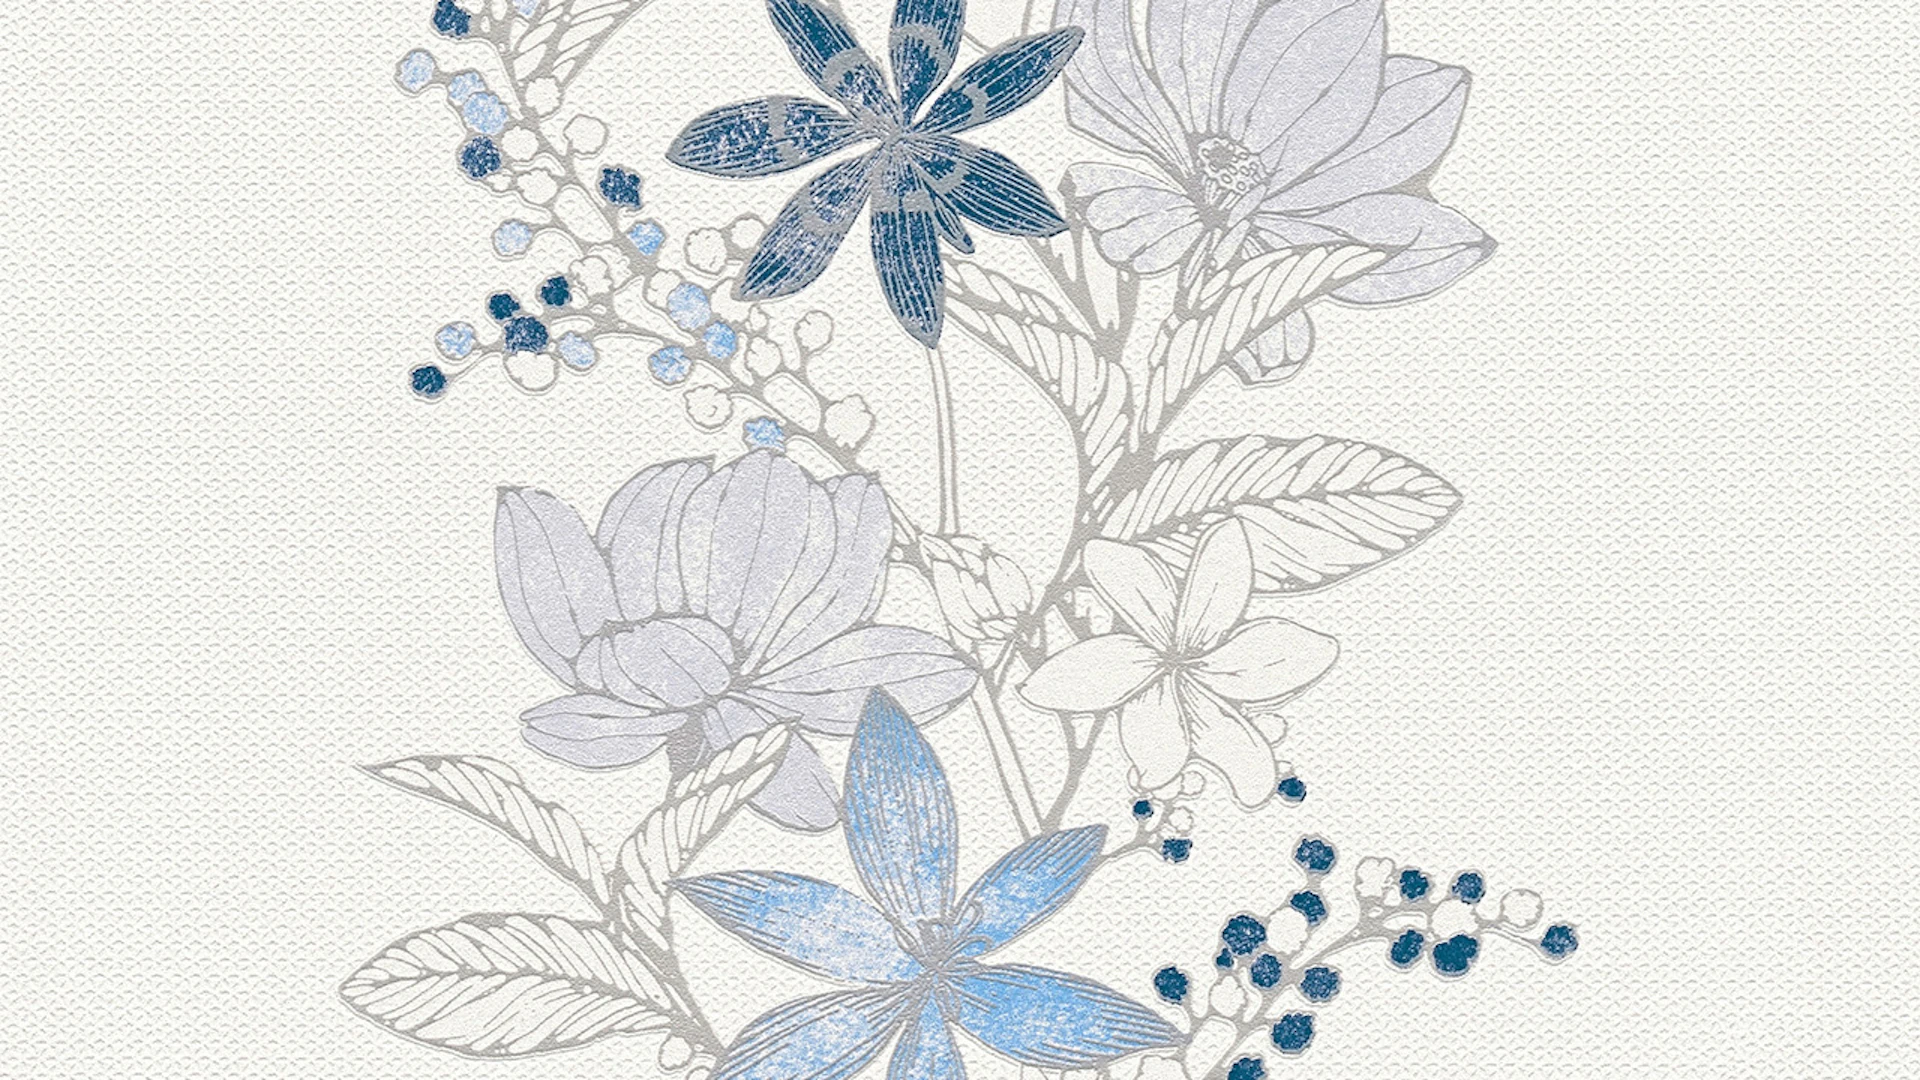 Tapete Esprit Vintage 13 Romantic Botanics Esprit Vintage Blumenranken Blau Metallic Weiß 543